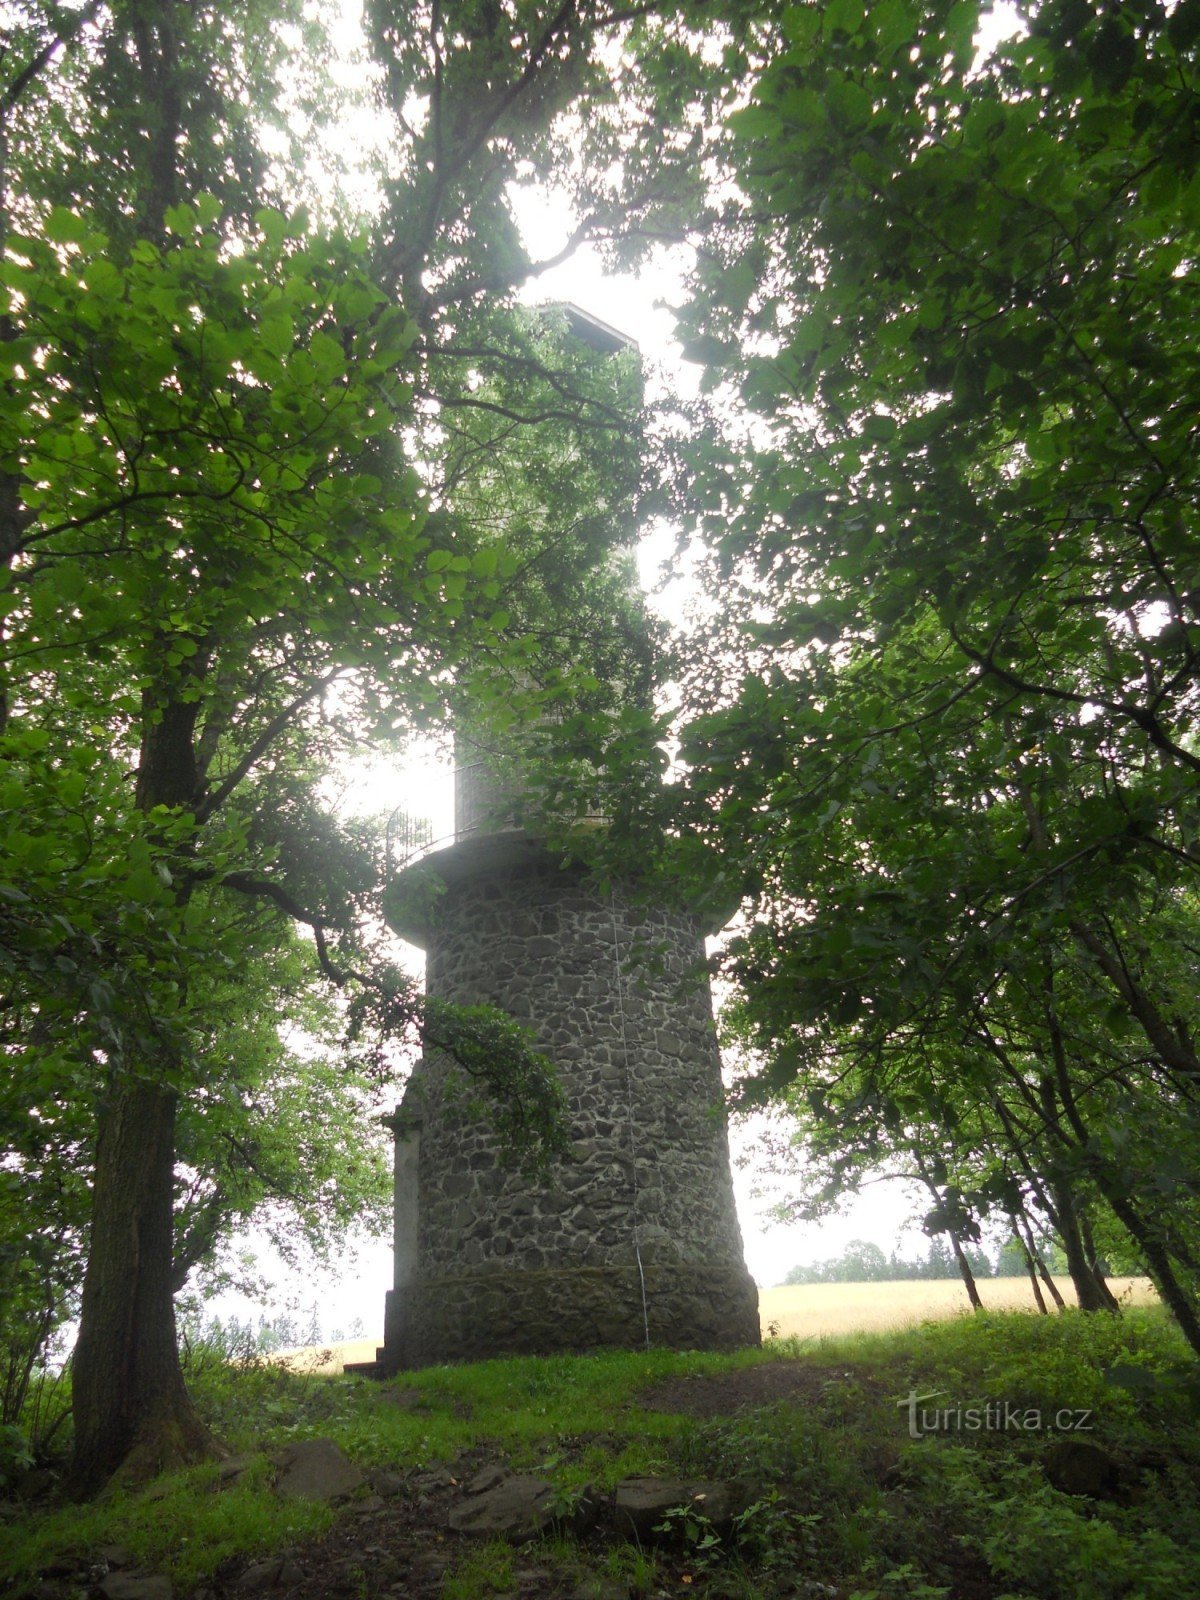 Torre de vigia Velký Chlum perto de Děčín.